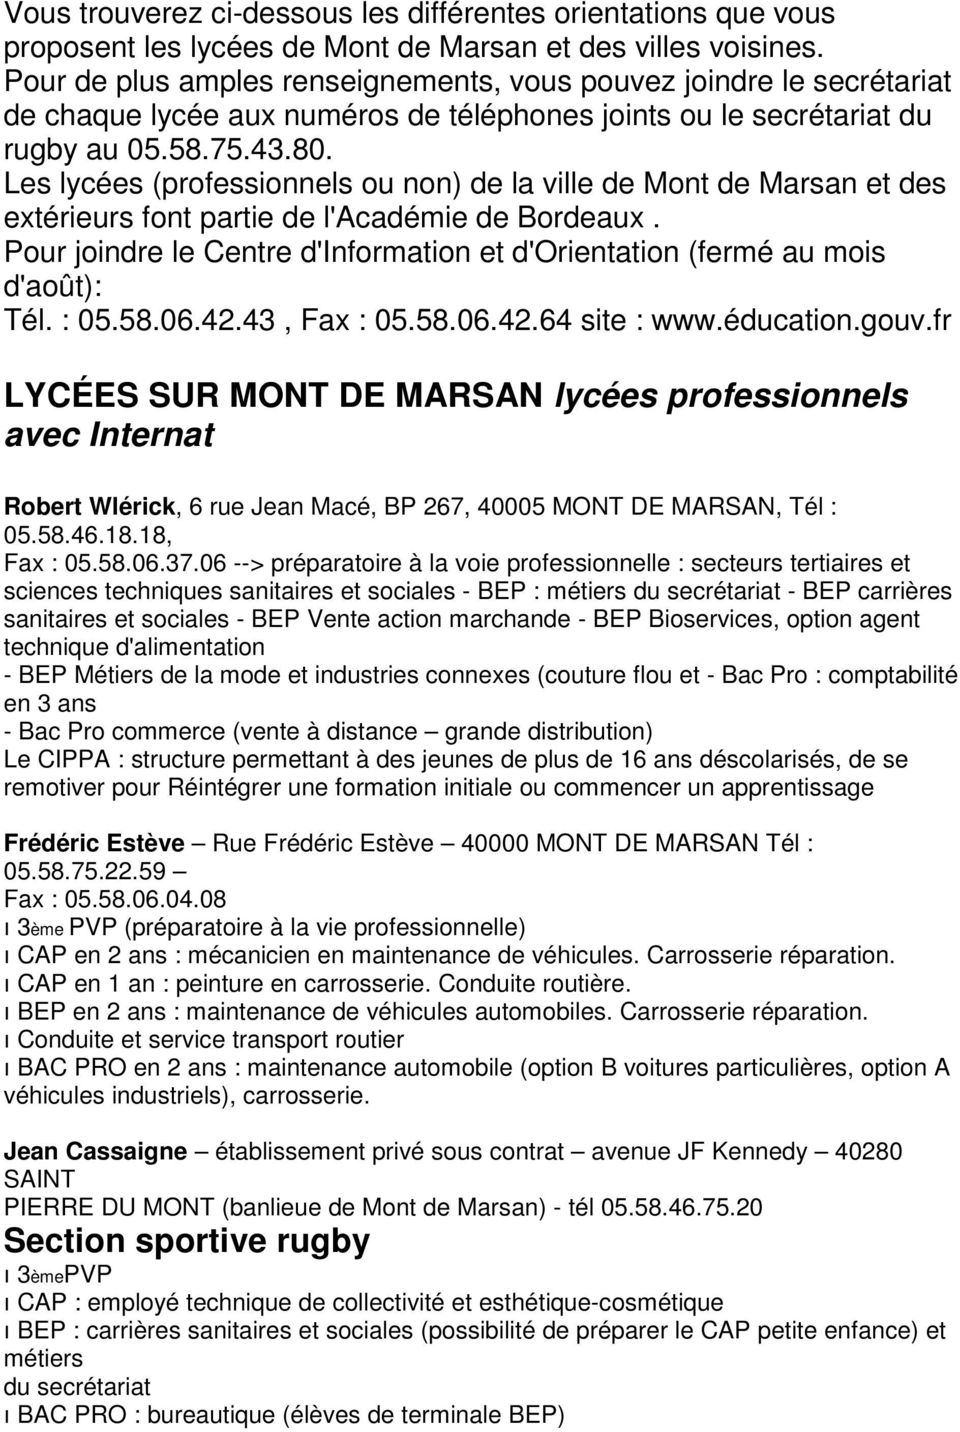 Les lycées (professionnels ou non) de la ville de Mont de Marsan et des extérieurs font partie de l'académie de Bordeaux.